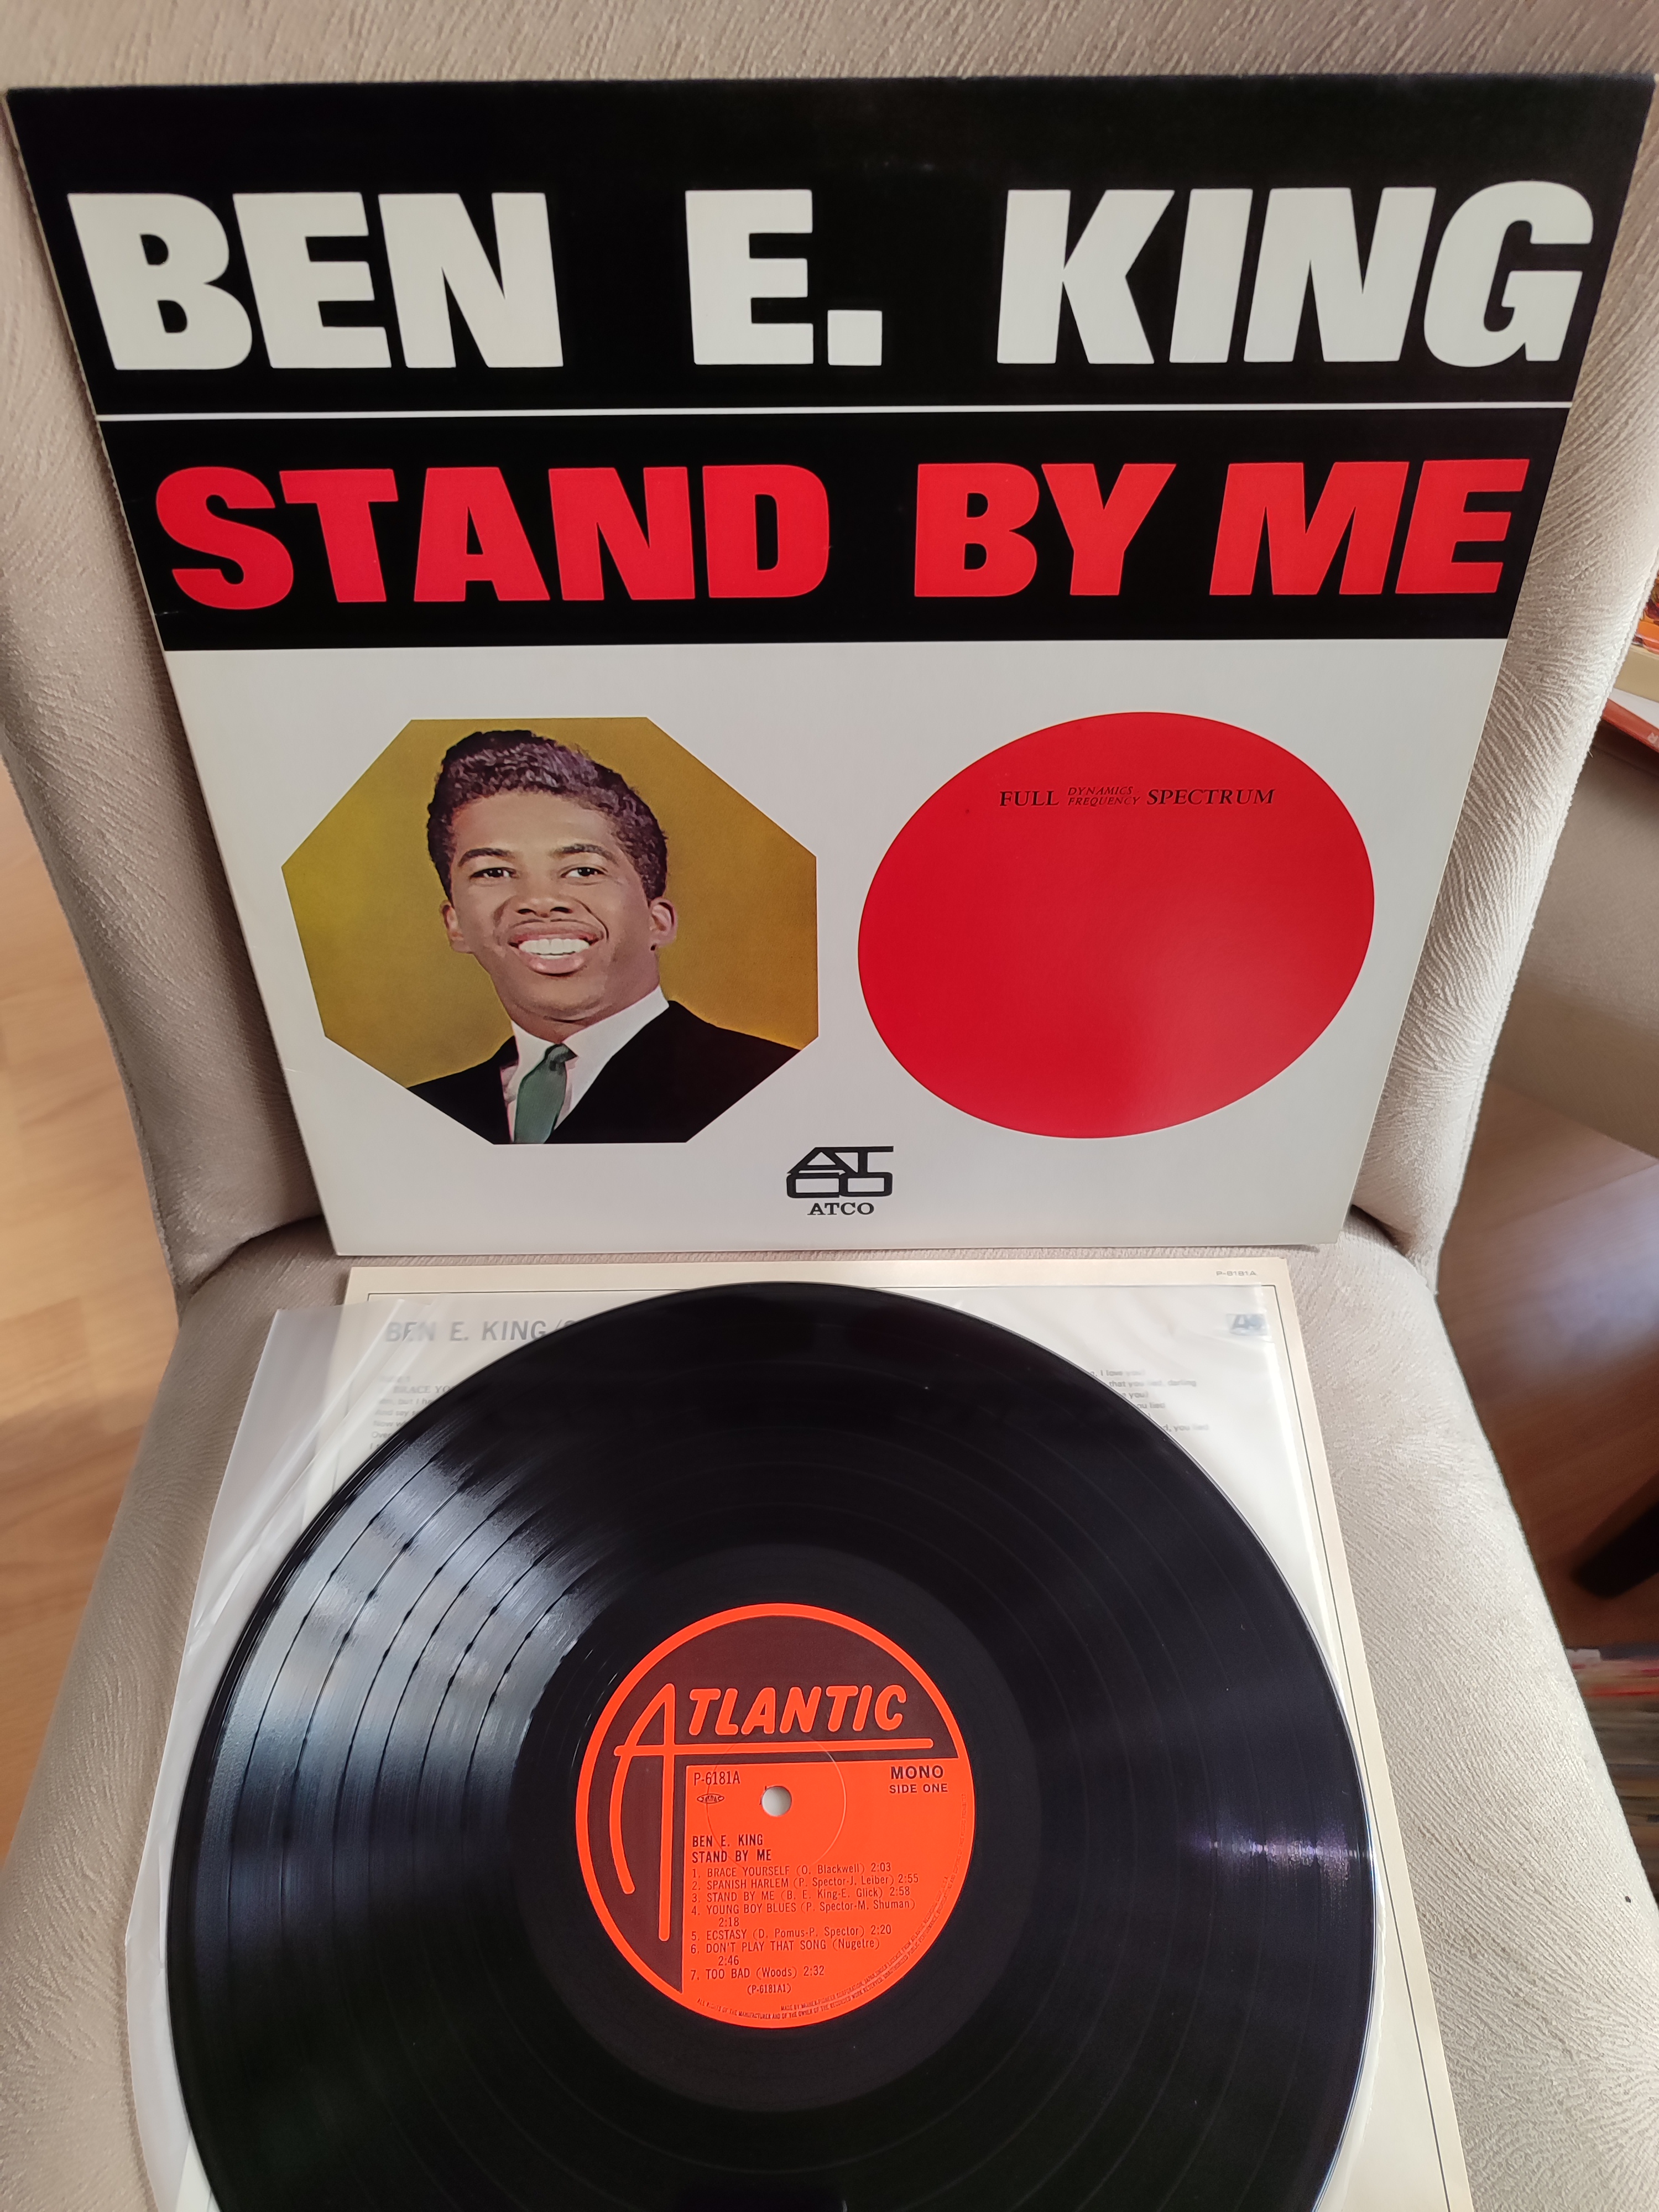 BEN E. KING - Stand By Me - 1980 Japonya Basım 33 lük LP Plak Albüm - Obi’siz 2. el